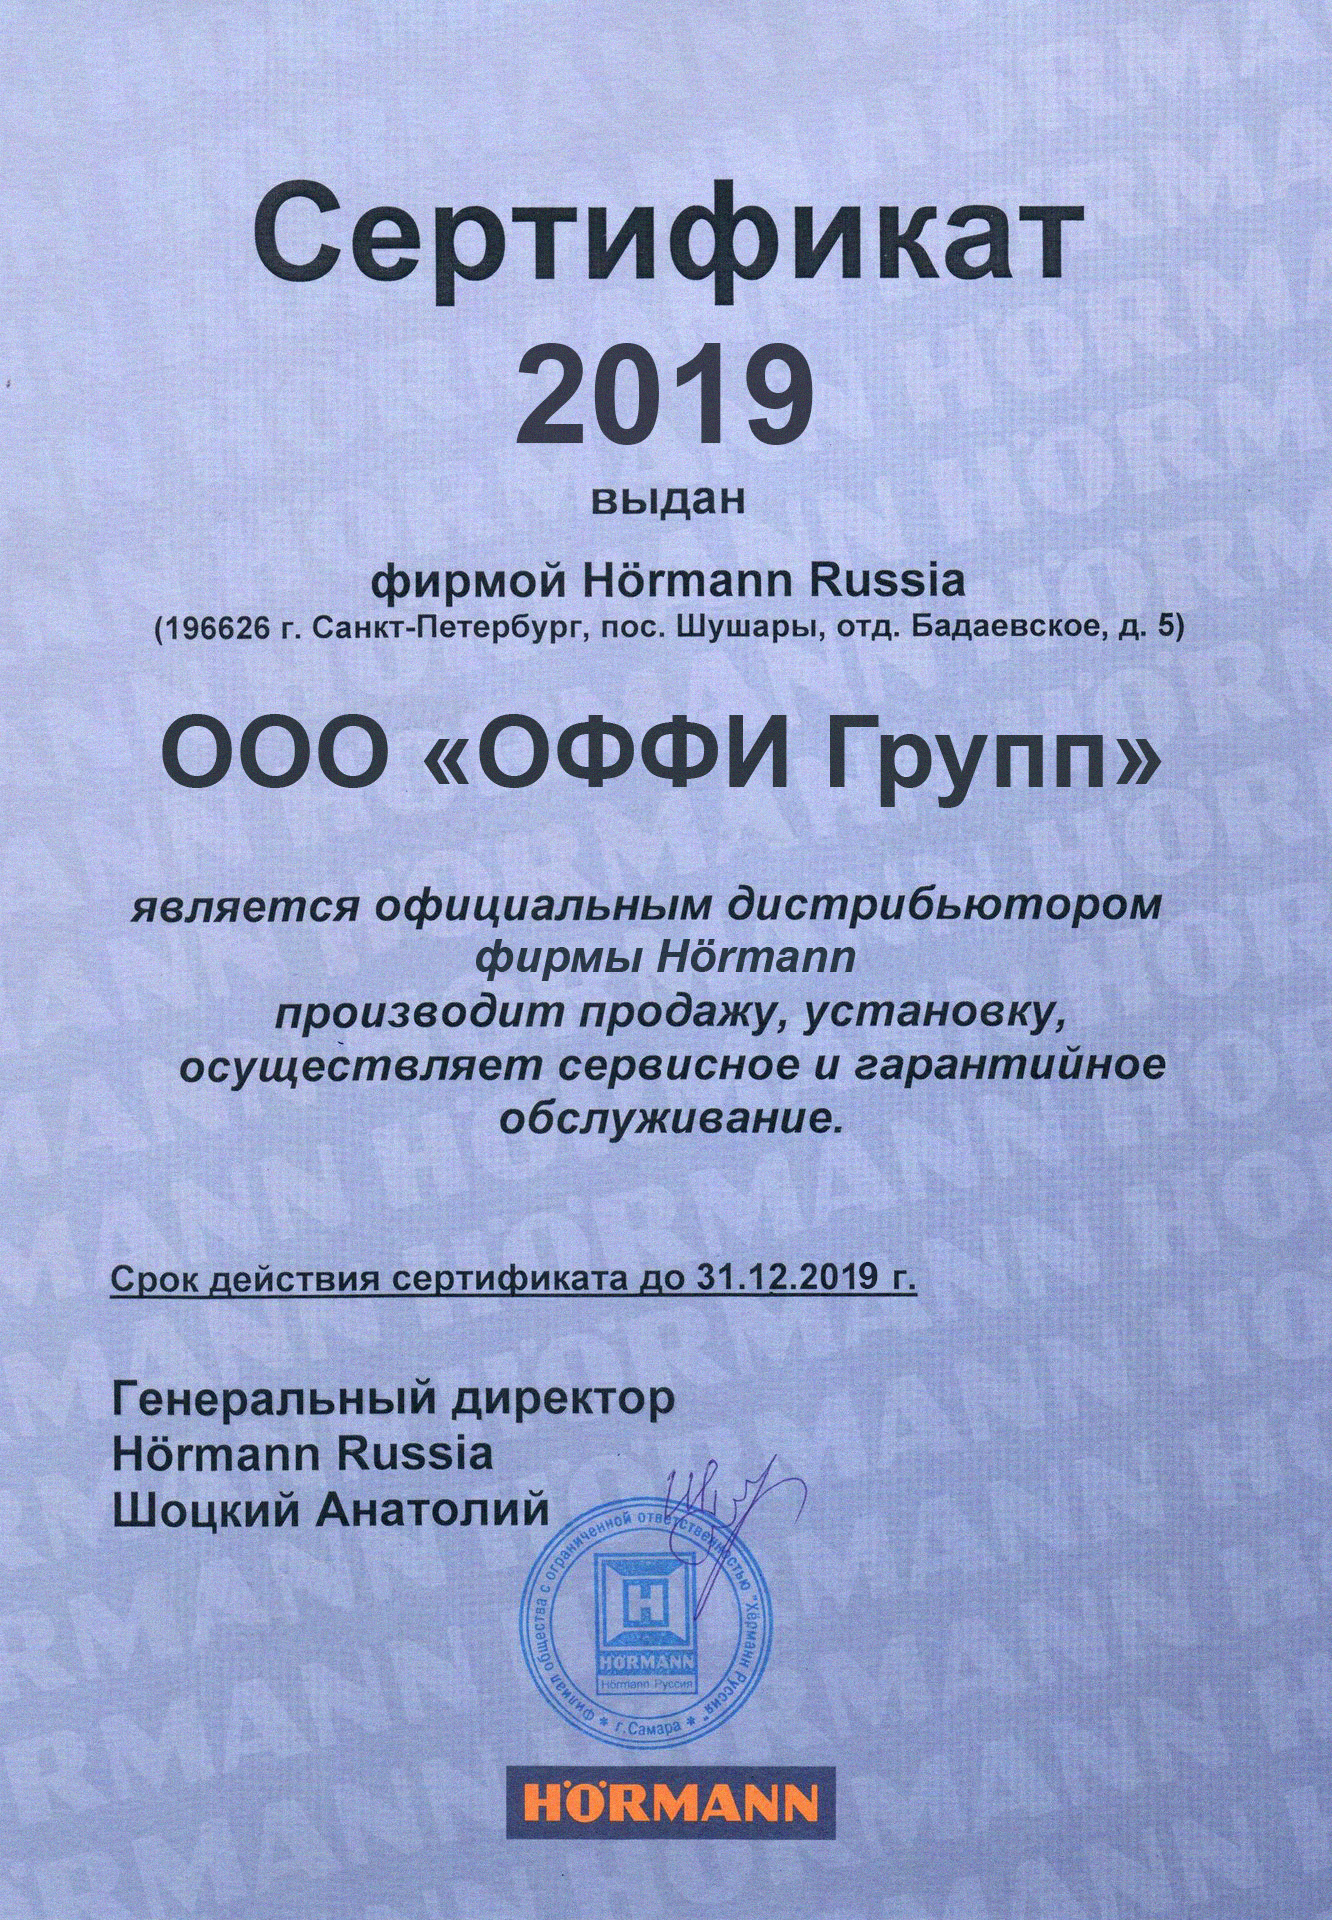 offi_certificate_hormann_2019